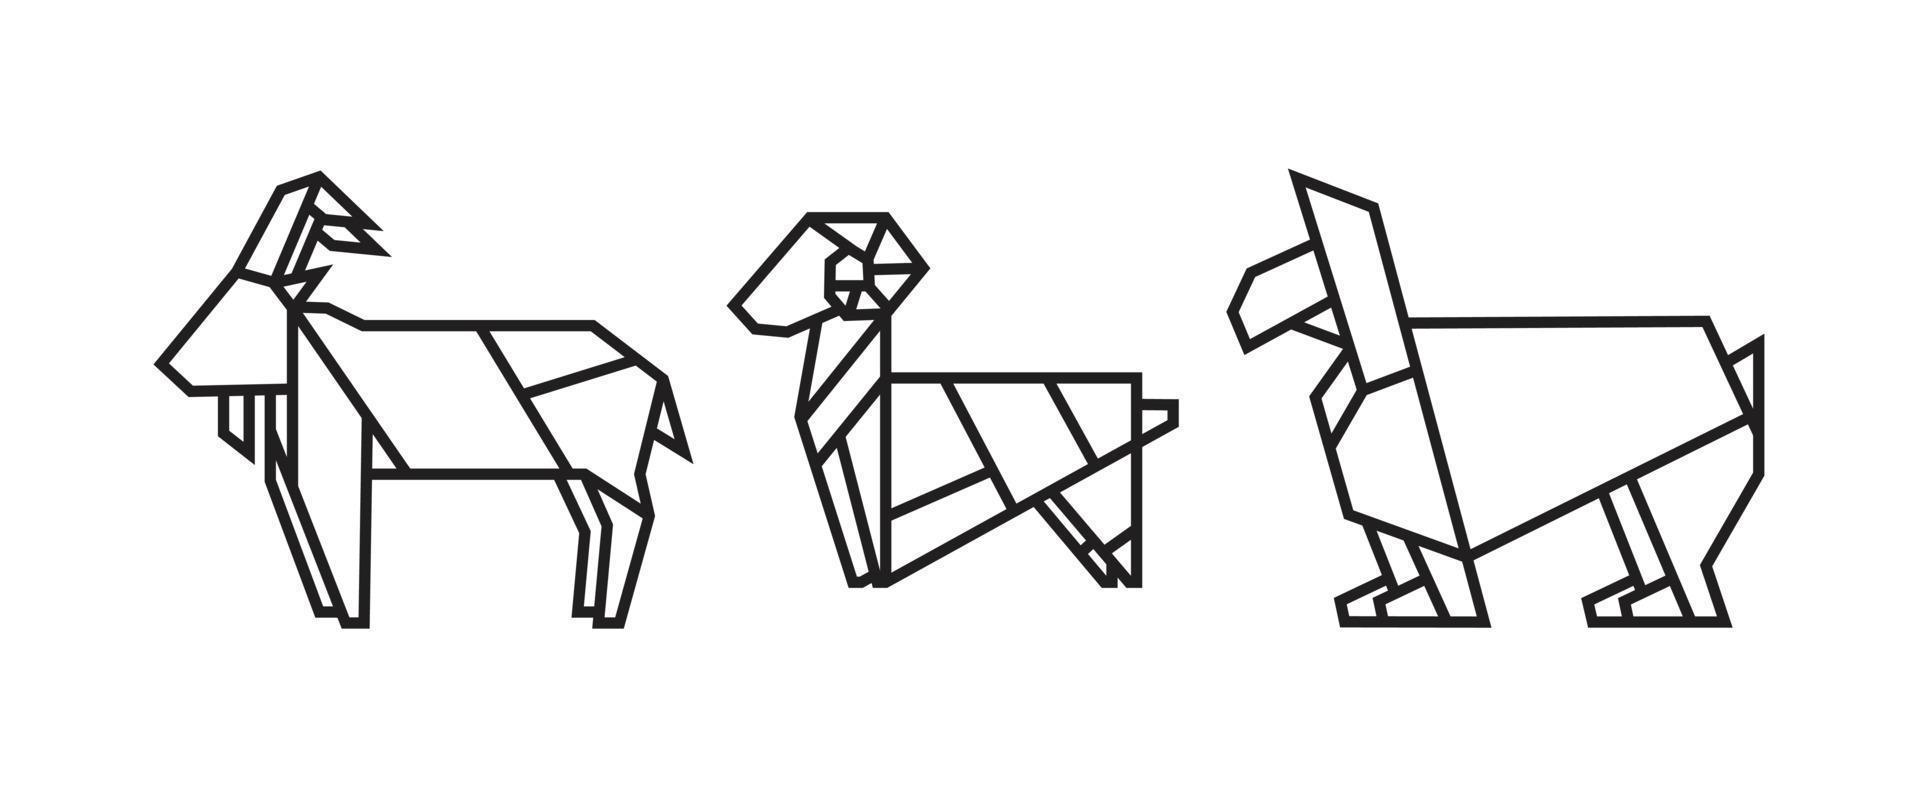 ilustraciones de cabra en estilo origami. vector